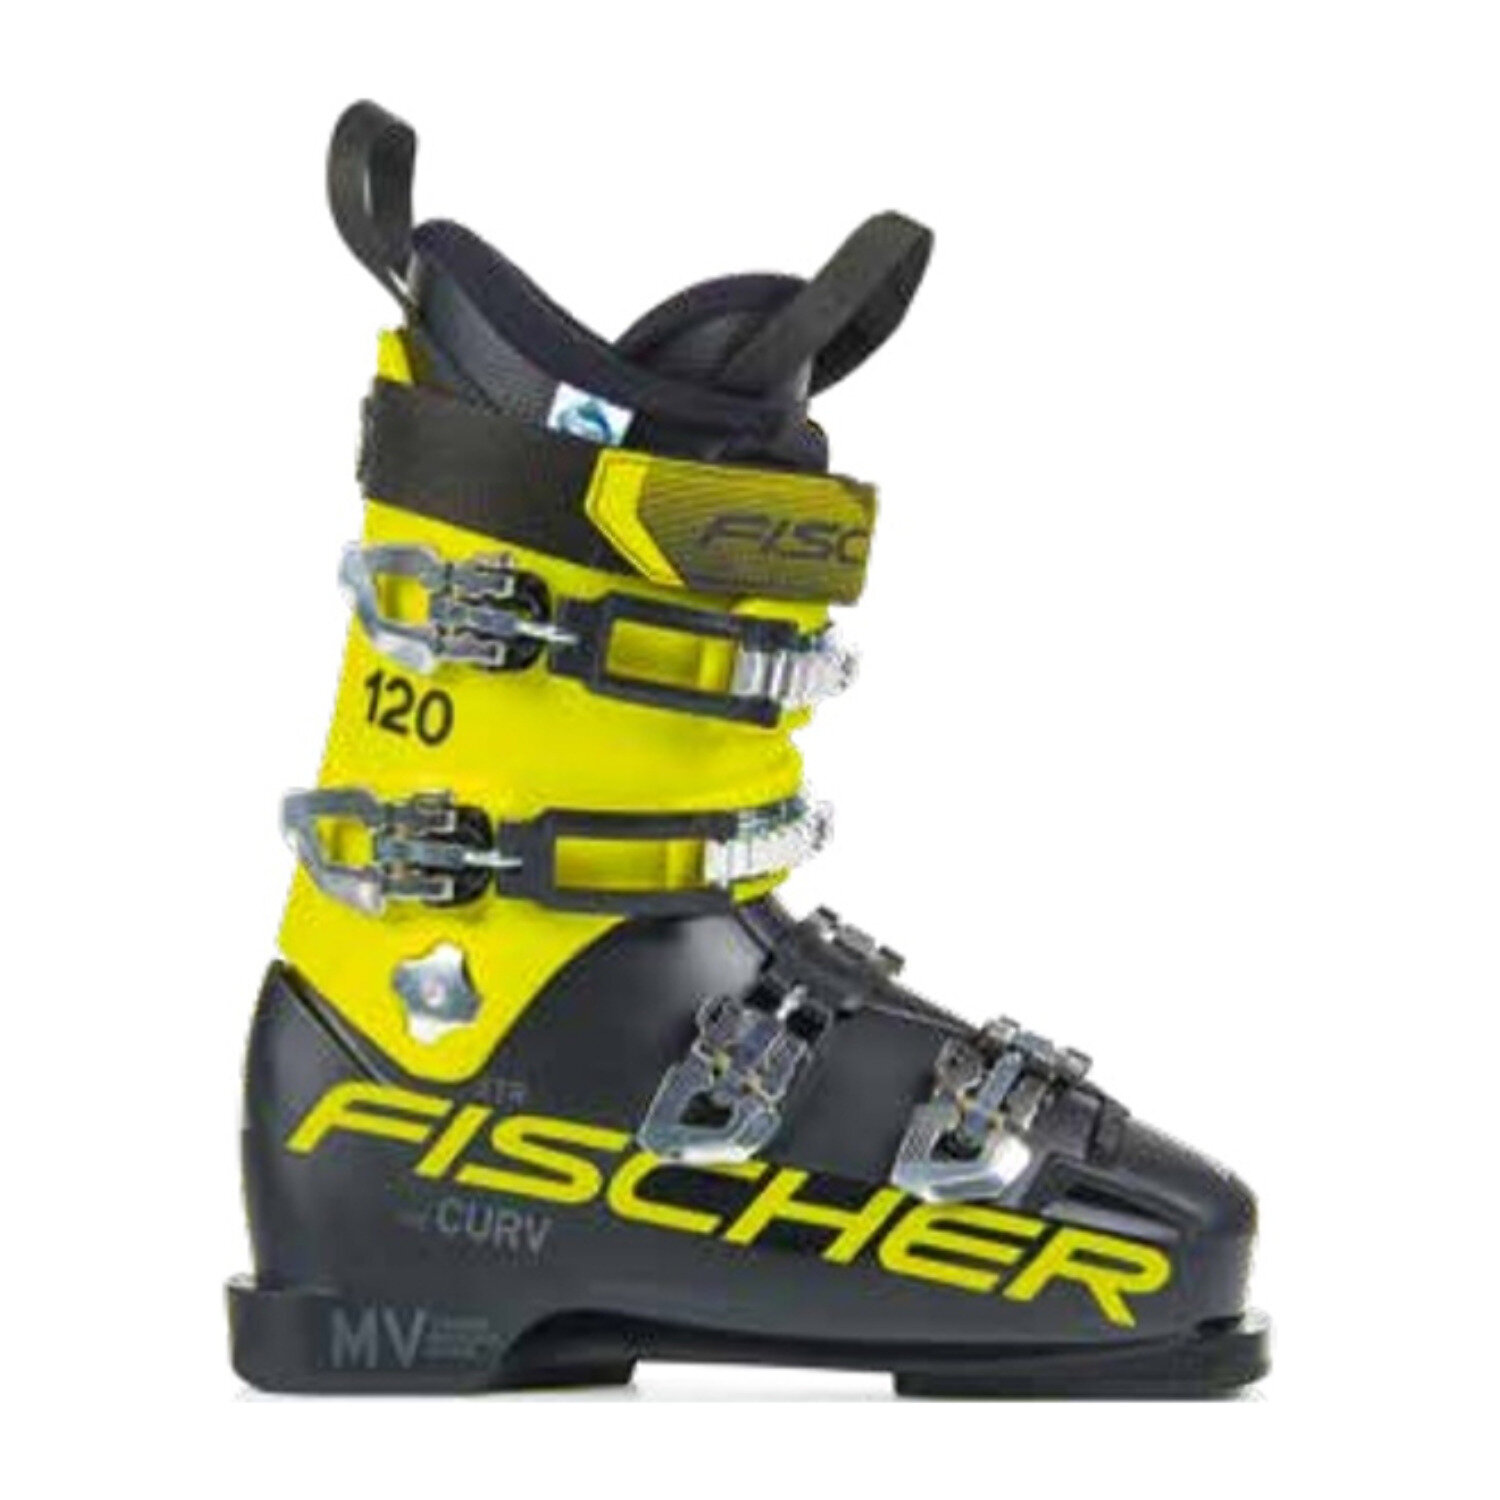 Горнолыжные ботинки Fischer The Curv 120 XTR Black/Yellow 22/23